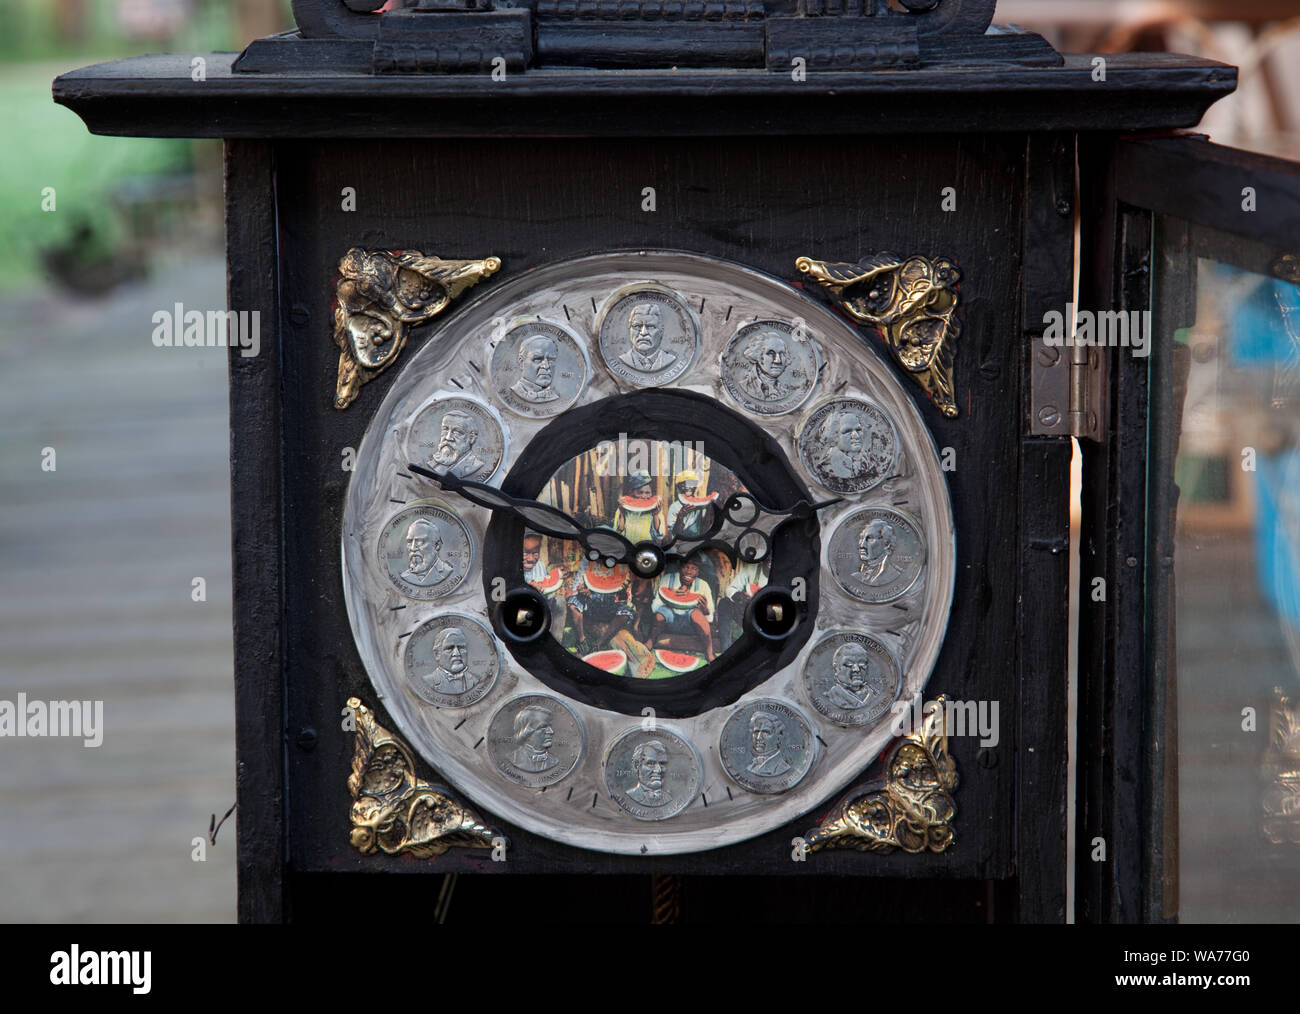 Un reloj que muestra los afroamericanos y Booker T. Washington en forma degradante luz, encontrado en una caja de antigüedades vinculadas a Booker T. Washington y Frances Benjamin Johnston, en Córdoba, Alabama Foto de stock